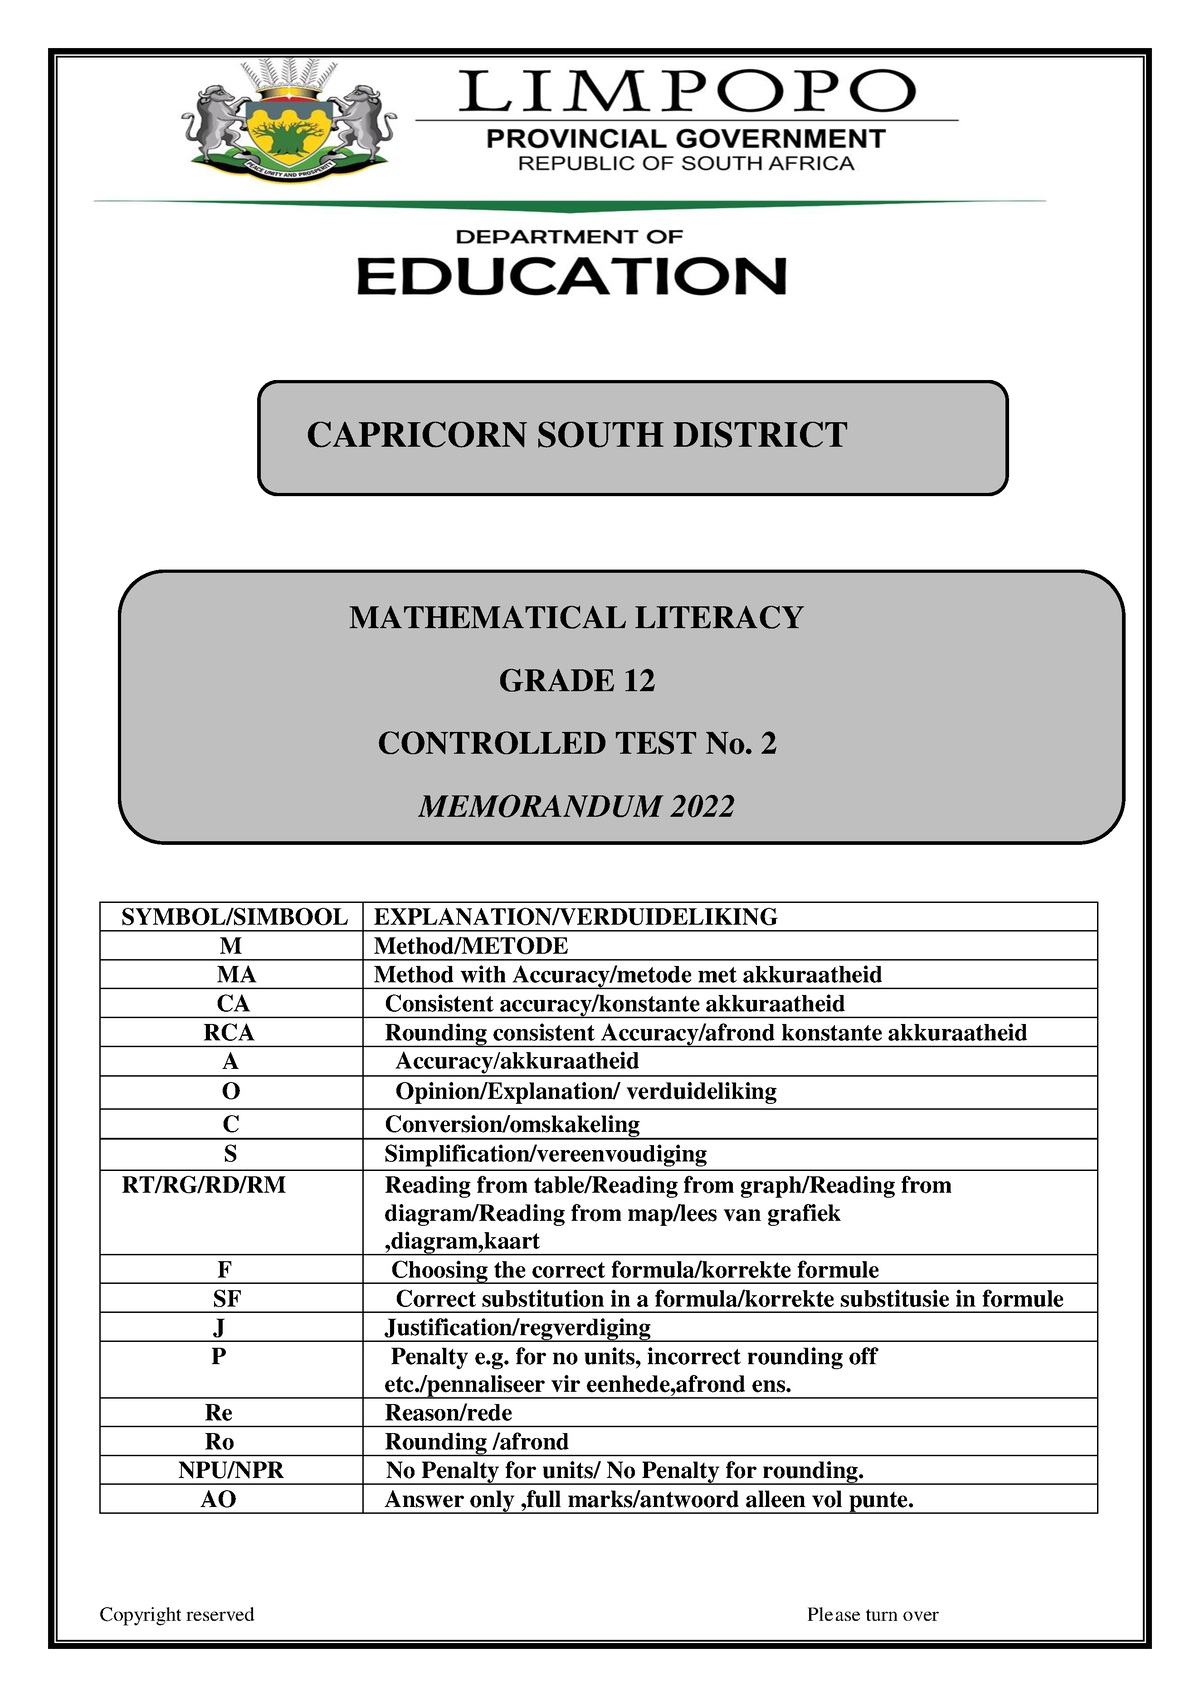 maths literacy grade 12 assignment 2022